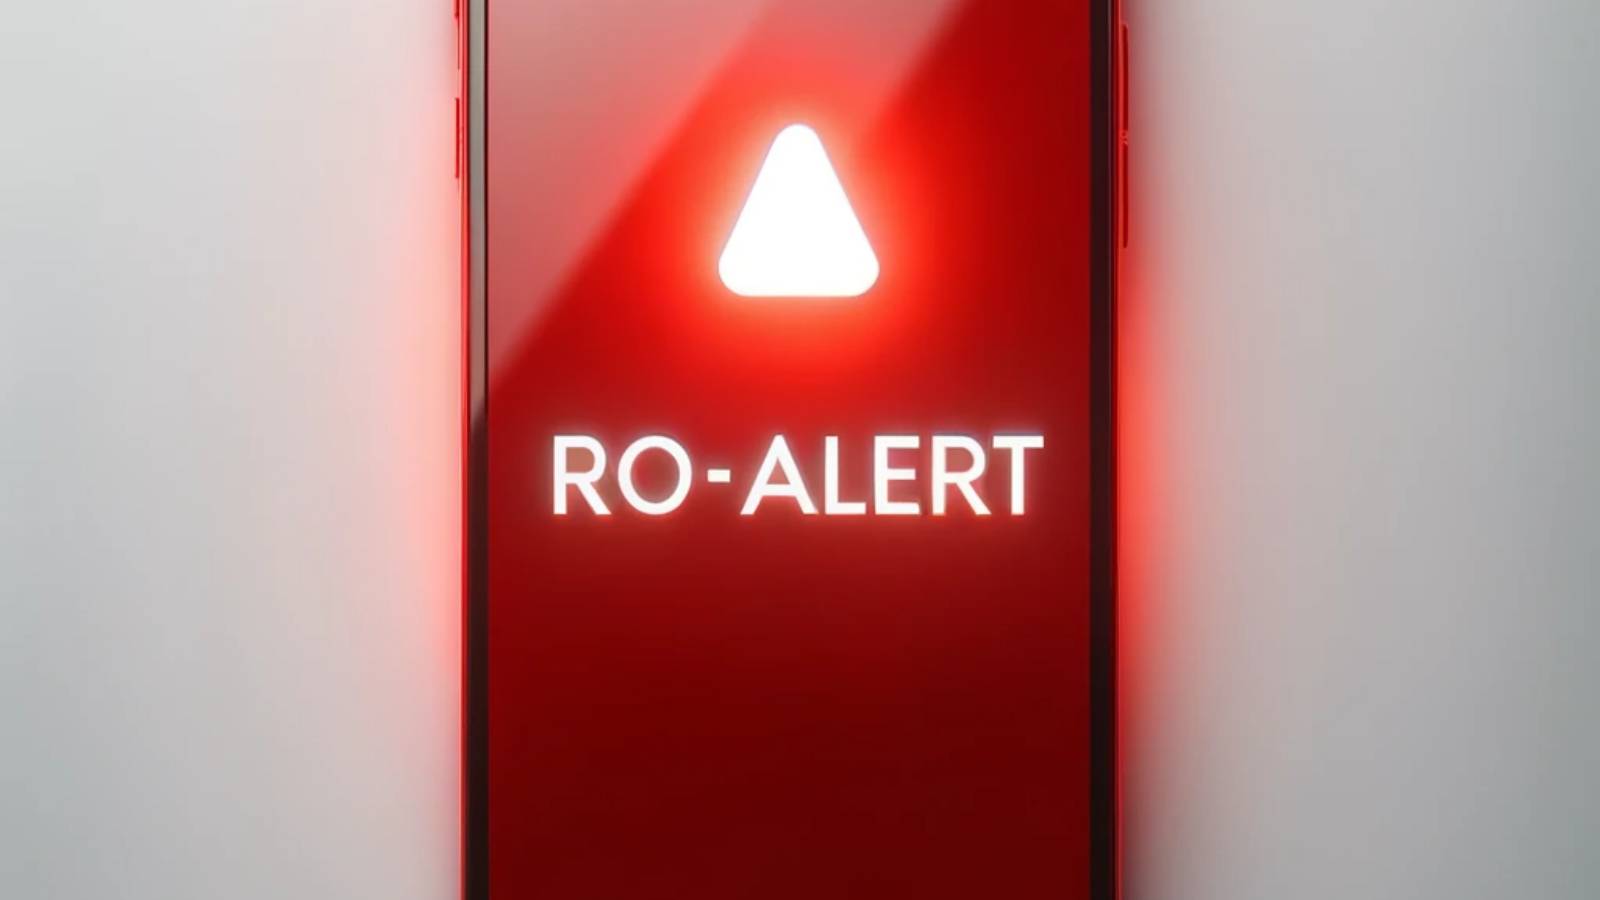 alert ro-alert emergency tulcea drone russia